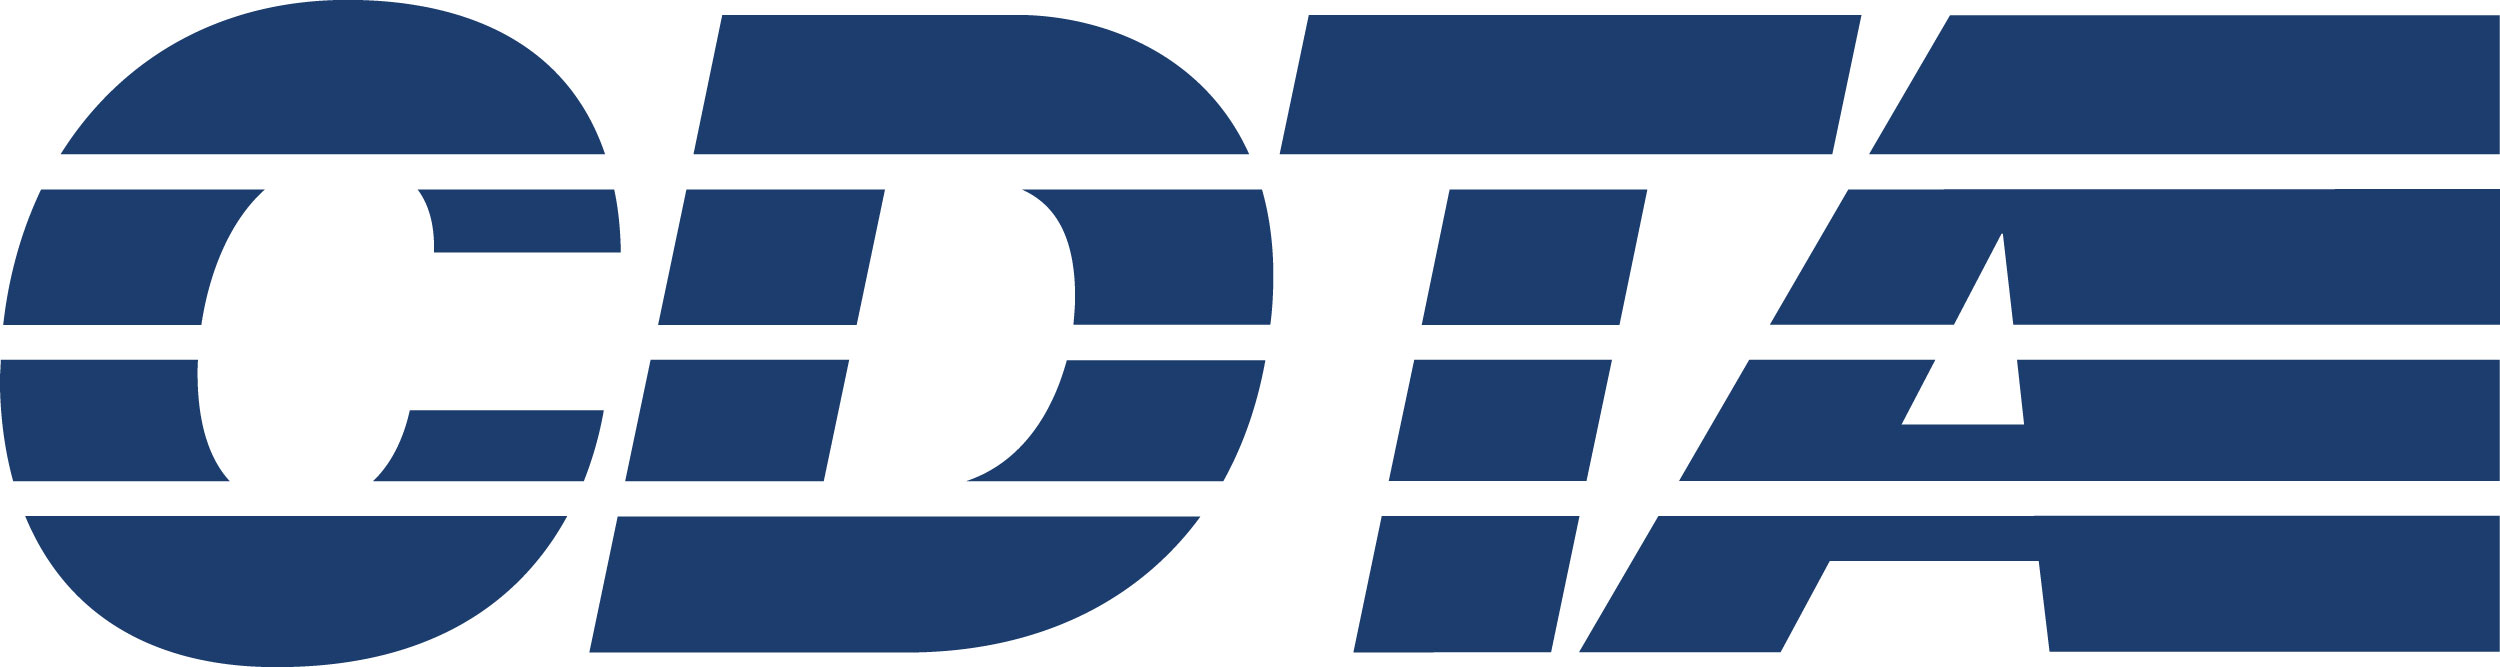 CDTA logo